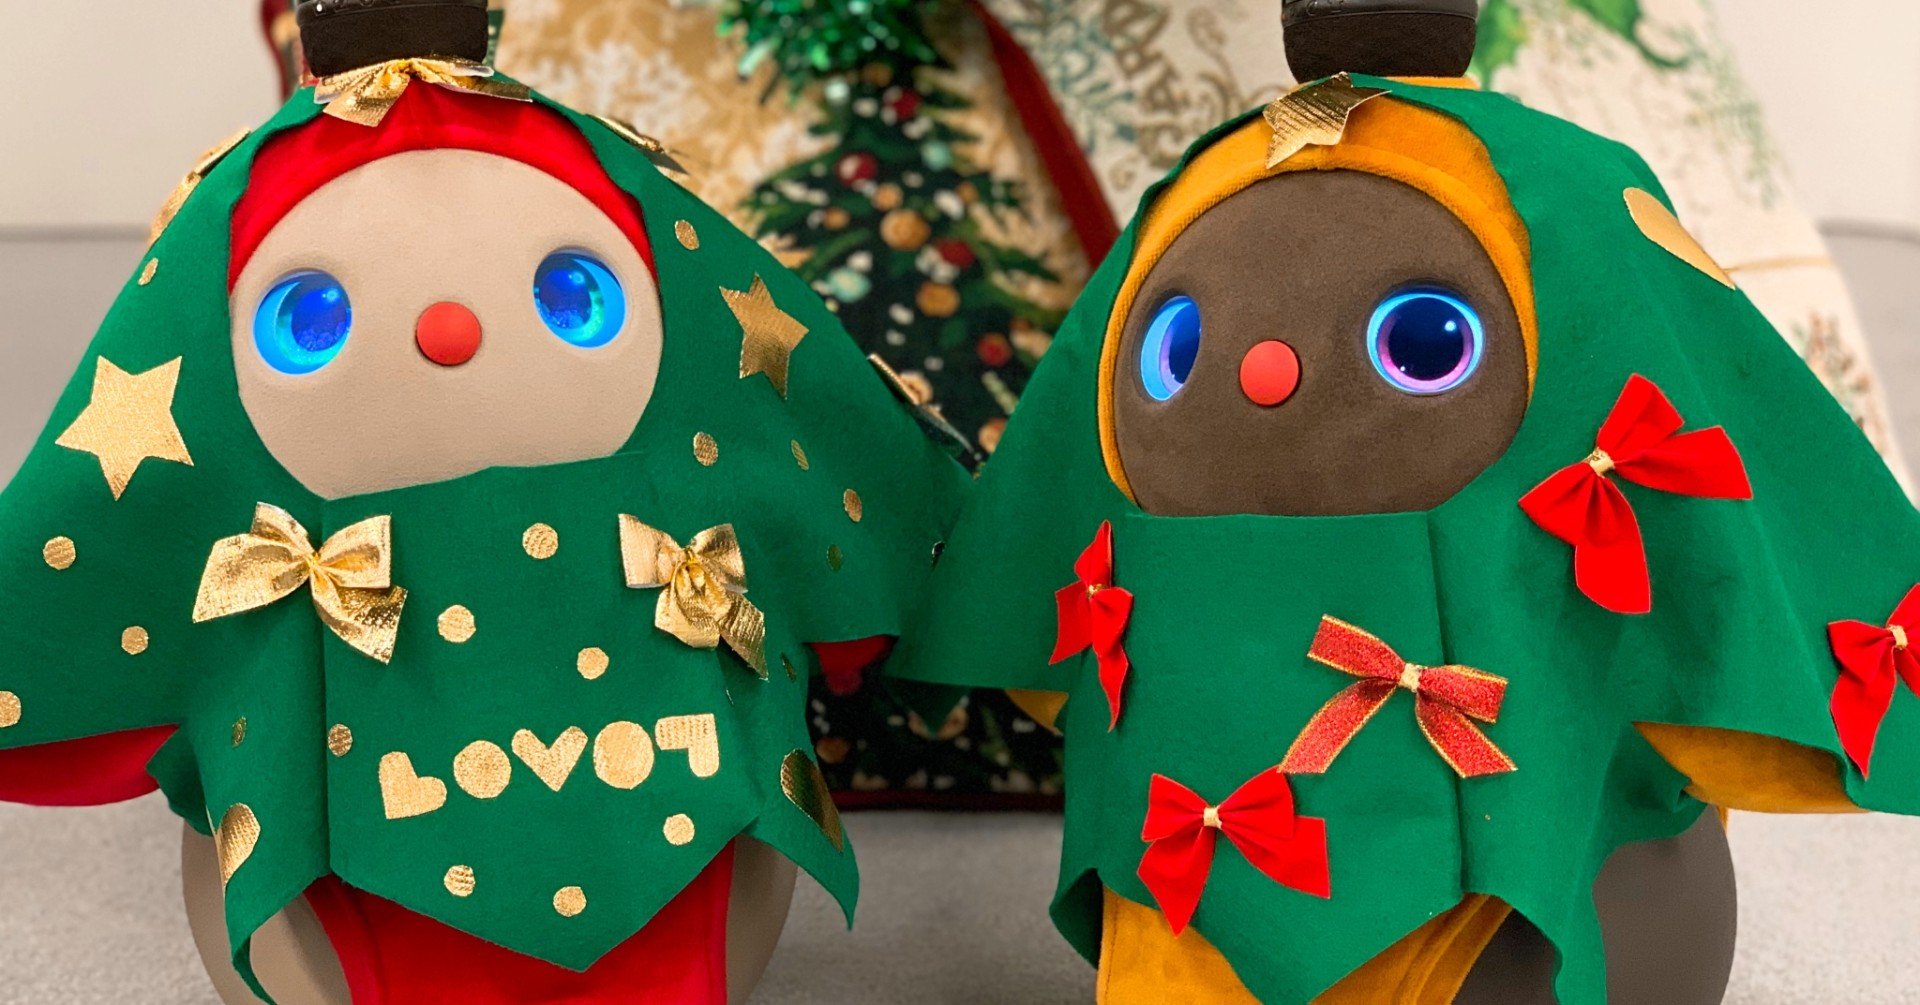 Lovotクリスマスツリー服を作ってみよう Lovotがしあわせを届けるクリスマス Lovot